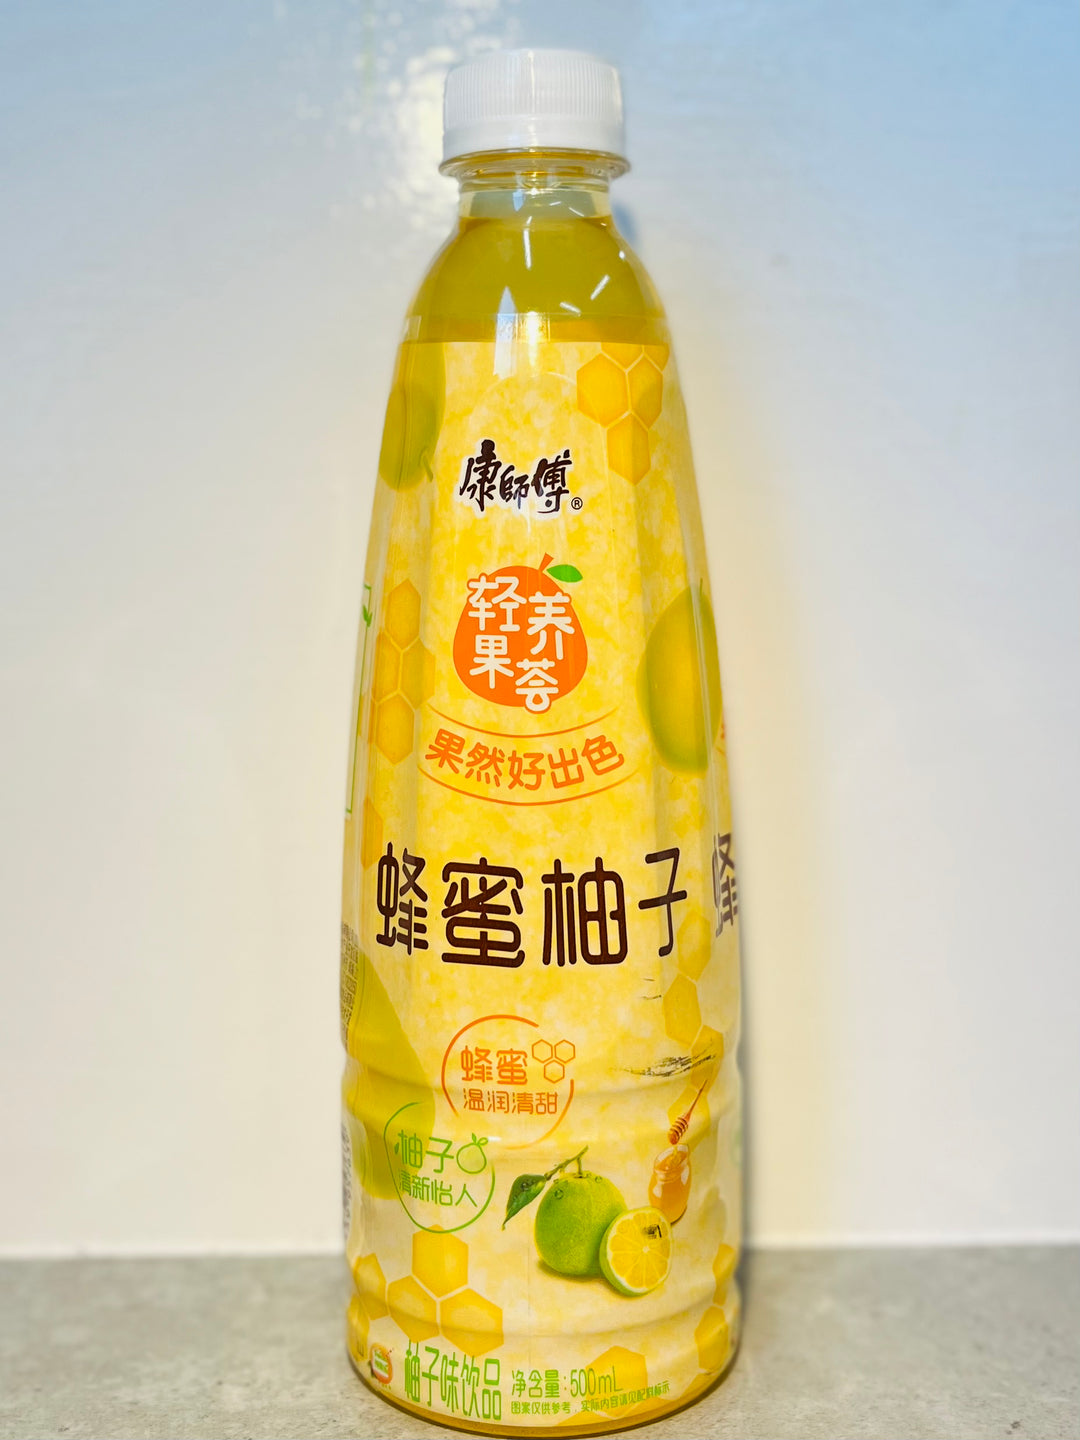 康师傅蜂蜜柚子茶500ml MK Honey Pomelo Tea